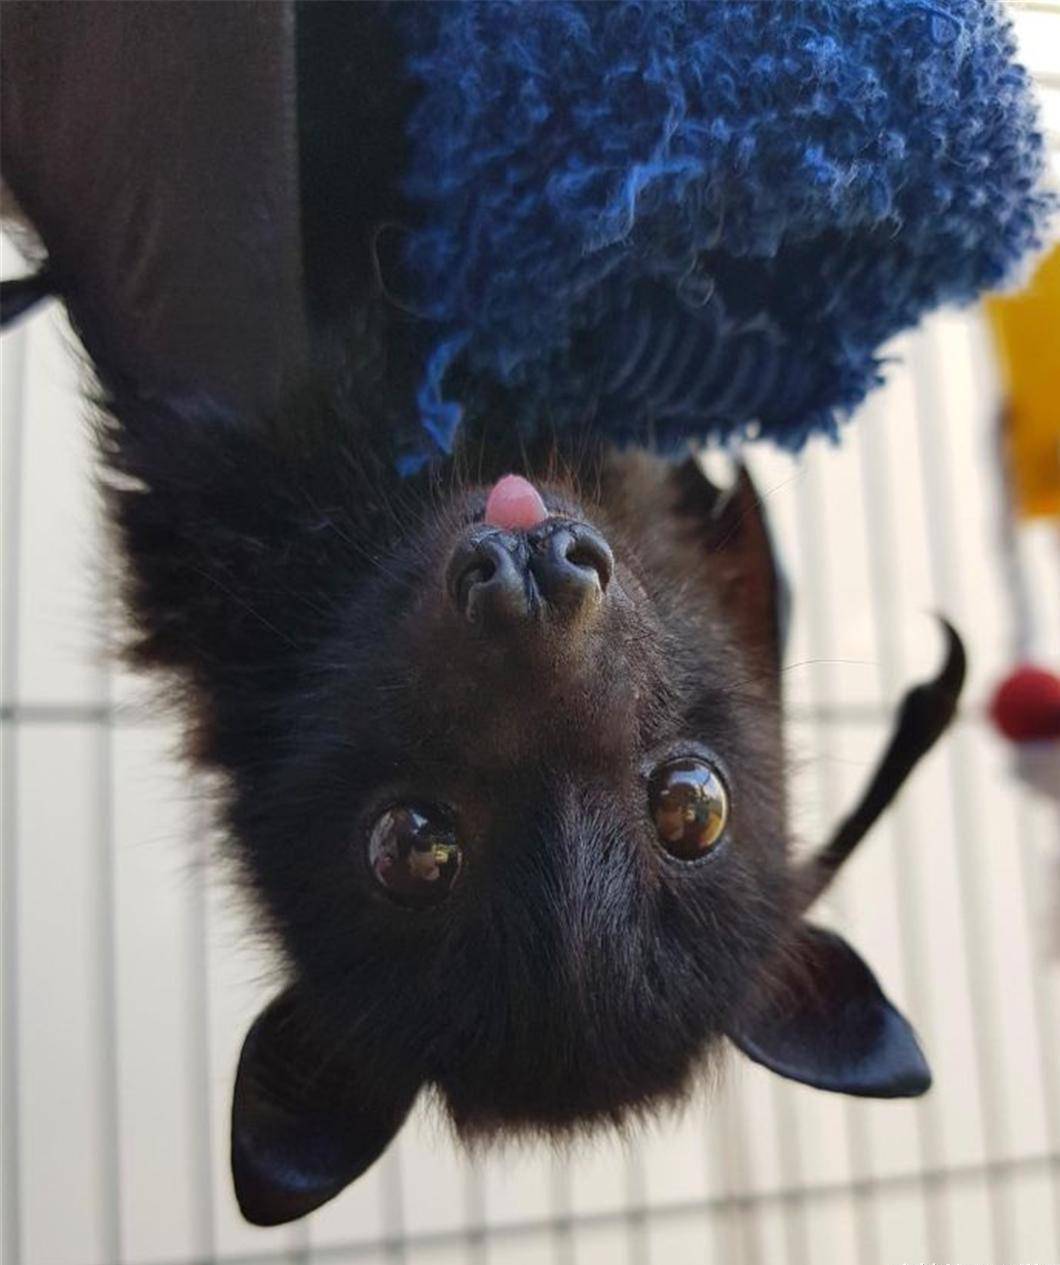 蝙蝠救援组织发布了可爱的蝙蝠照片,以展示它们实际上